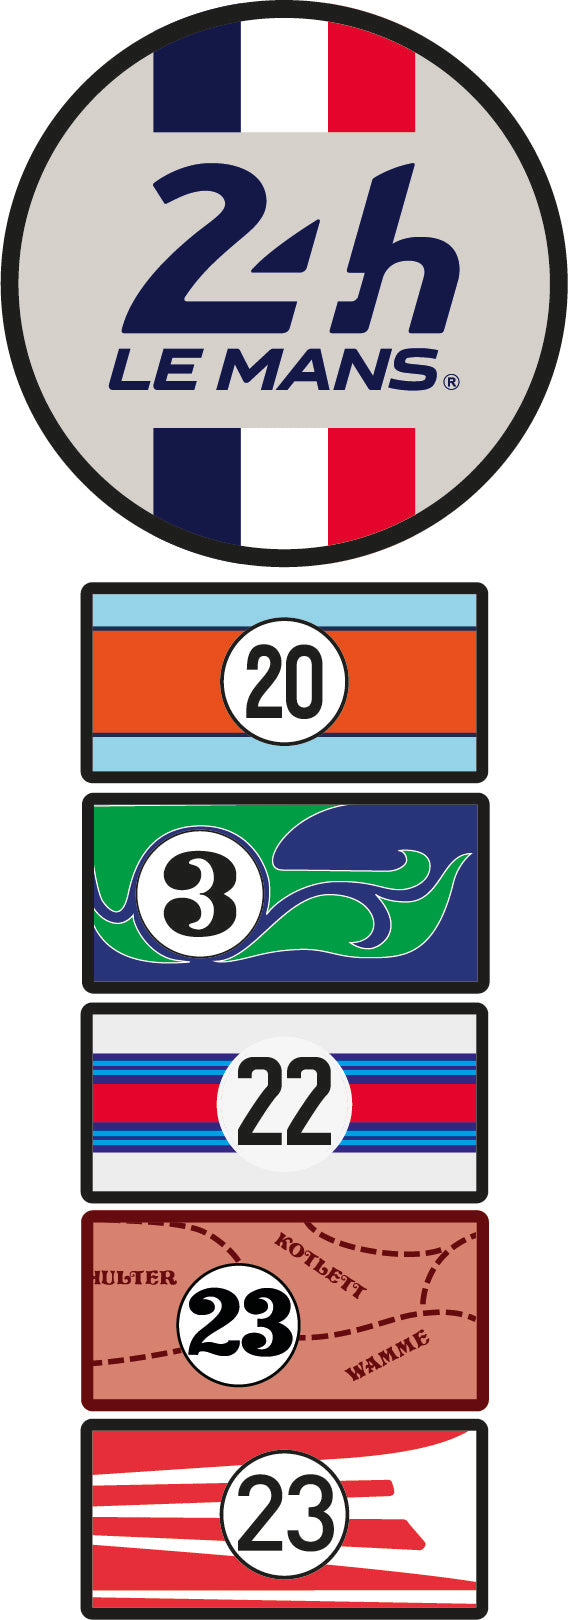 24H LEGENDE - 7 patchs brodés - Edition spéciale Porsche 917